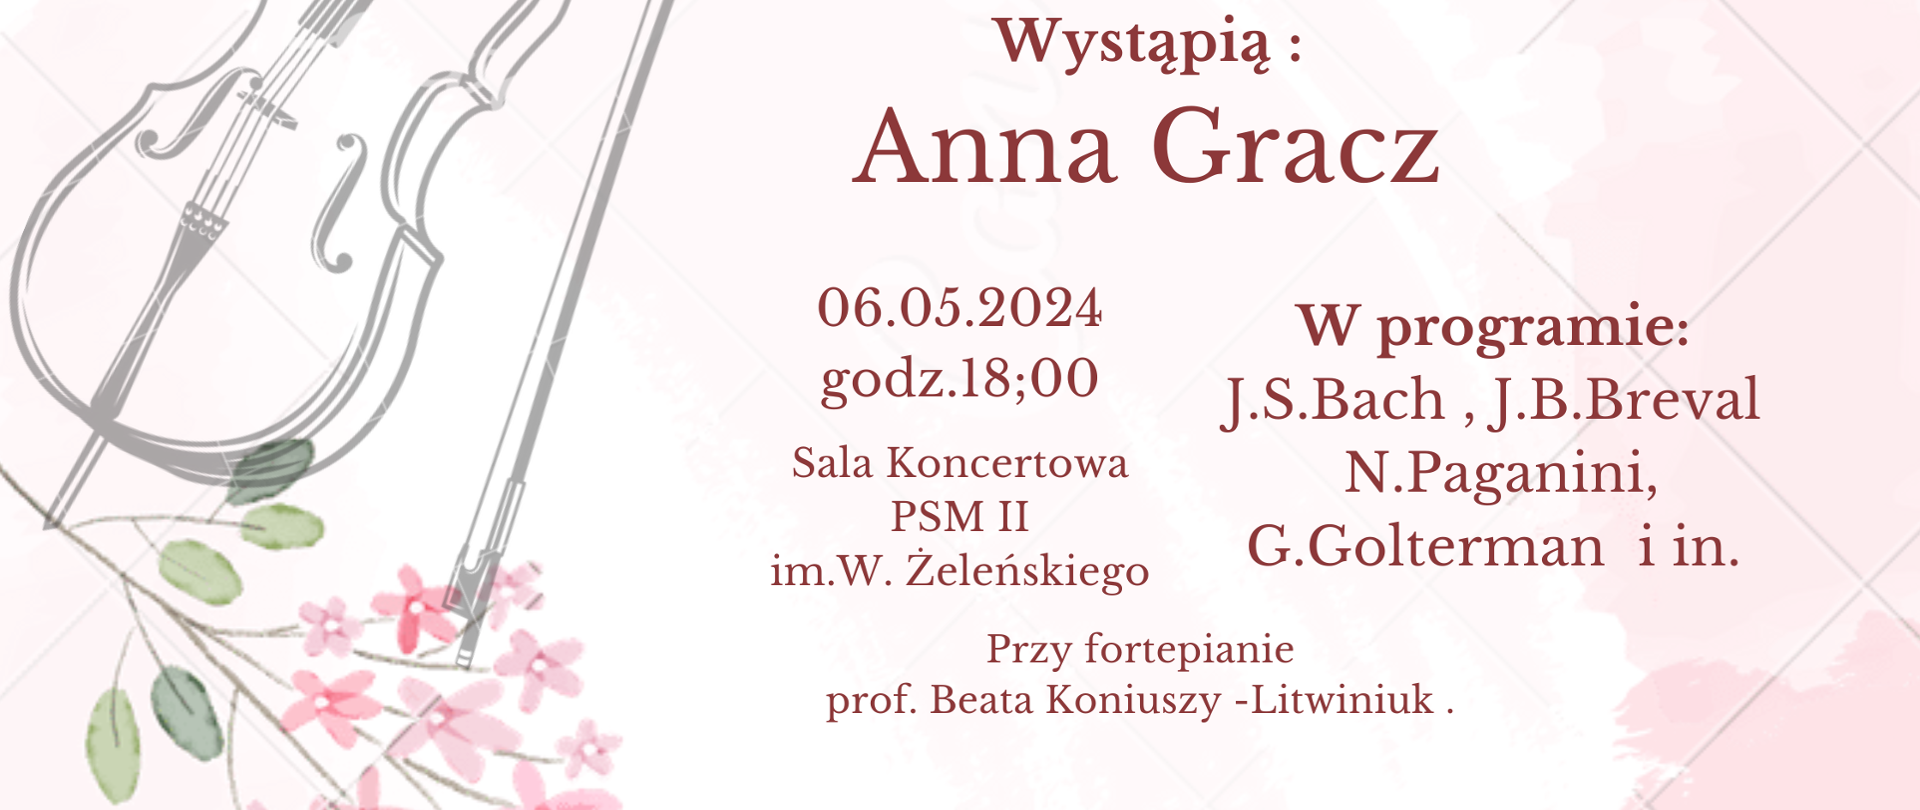 Audycja wiolonczelowa 06.05.2024 godz.18.00 plakat tło różowe z kwiatkami i obrazek wiolonczeli